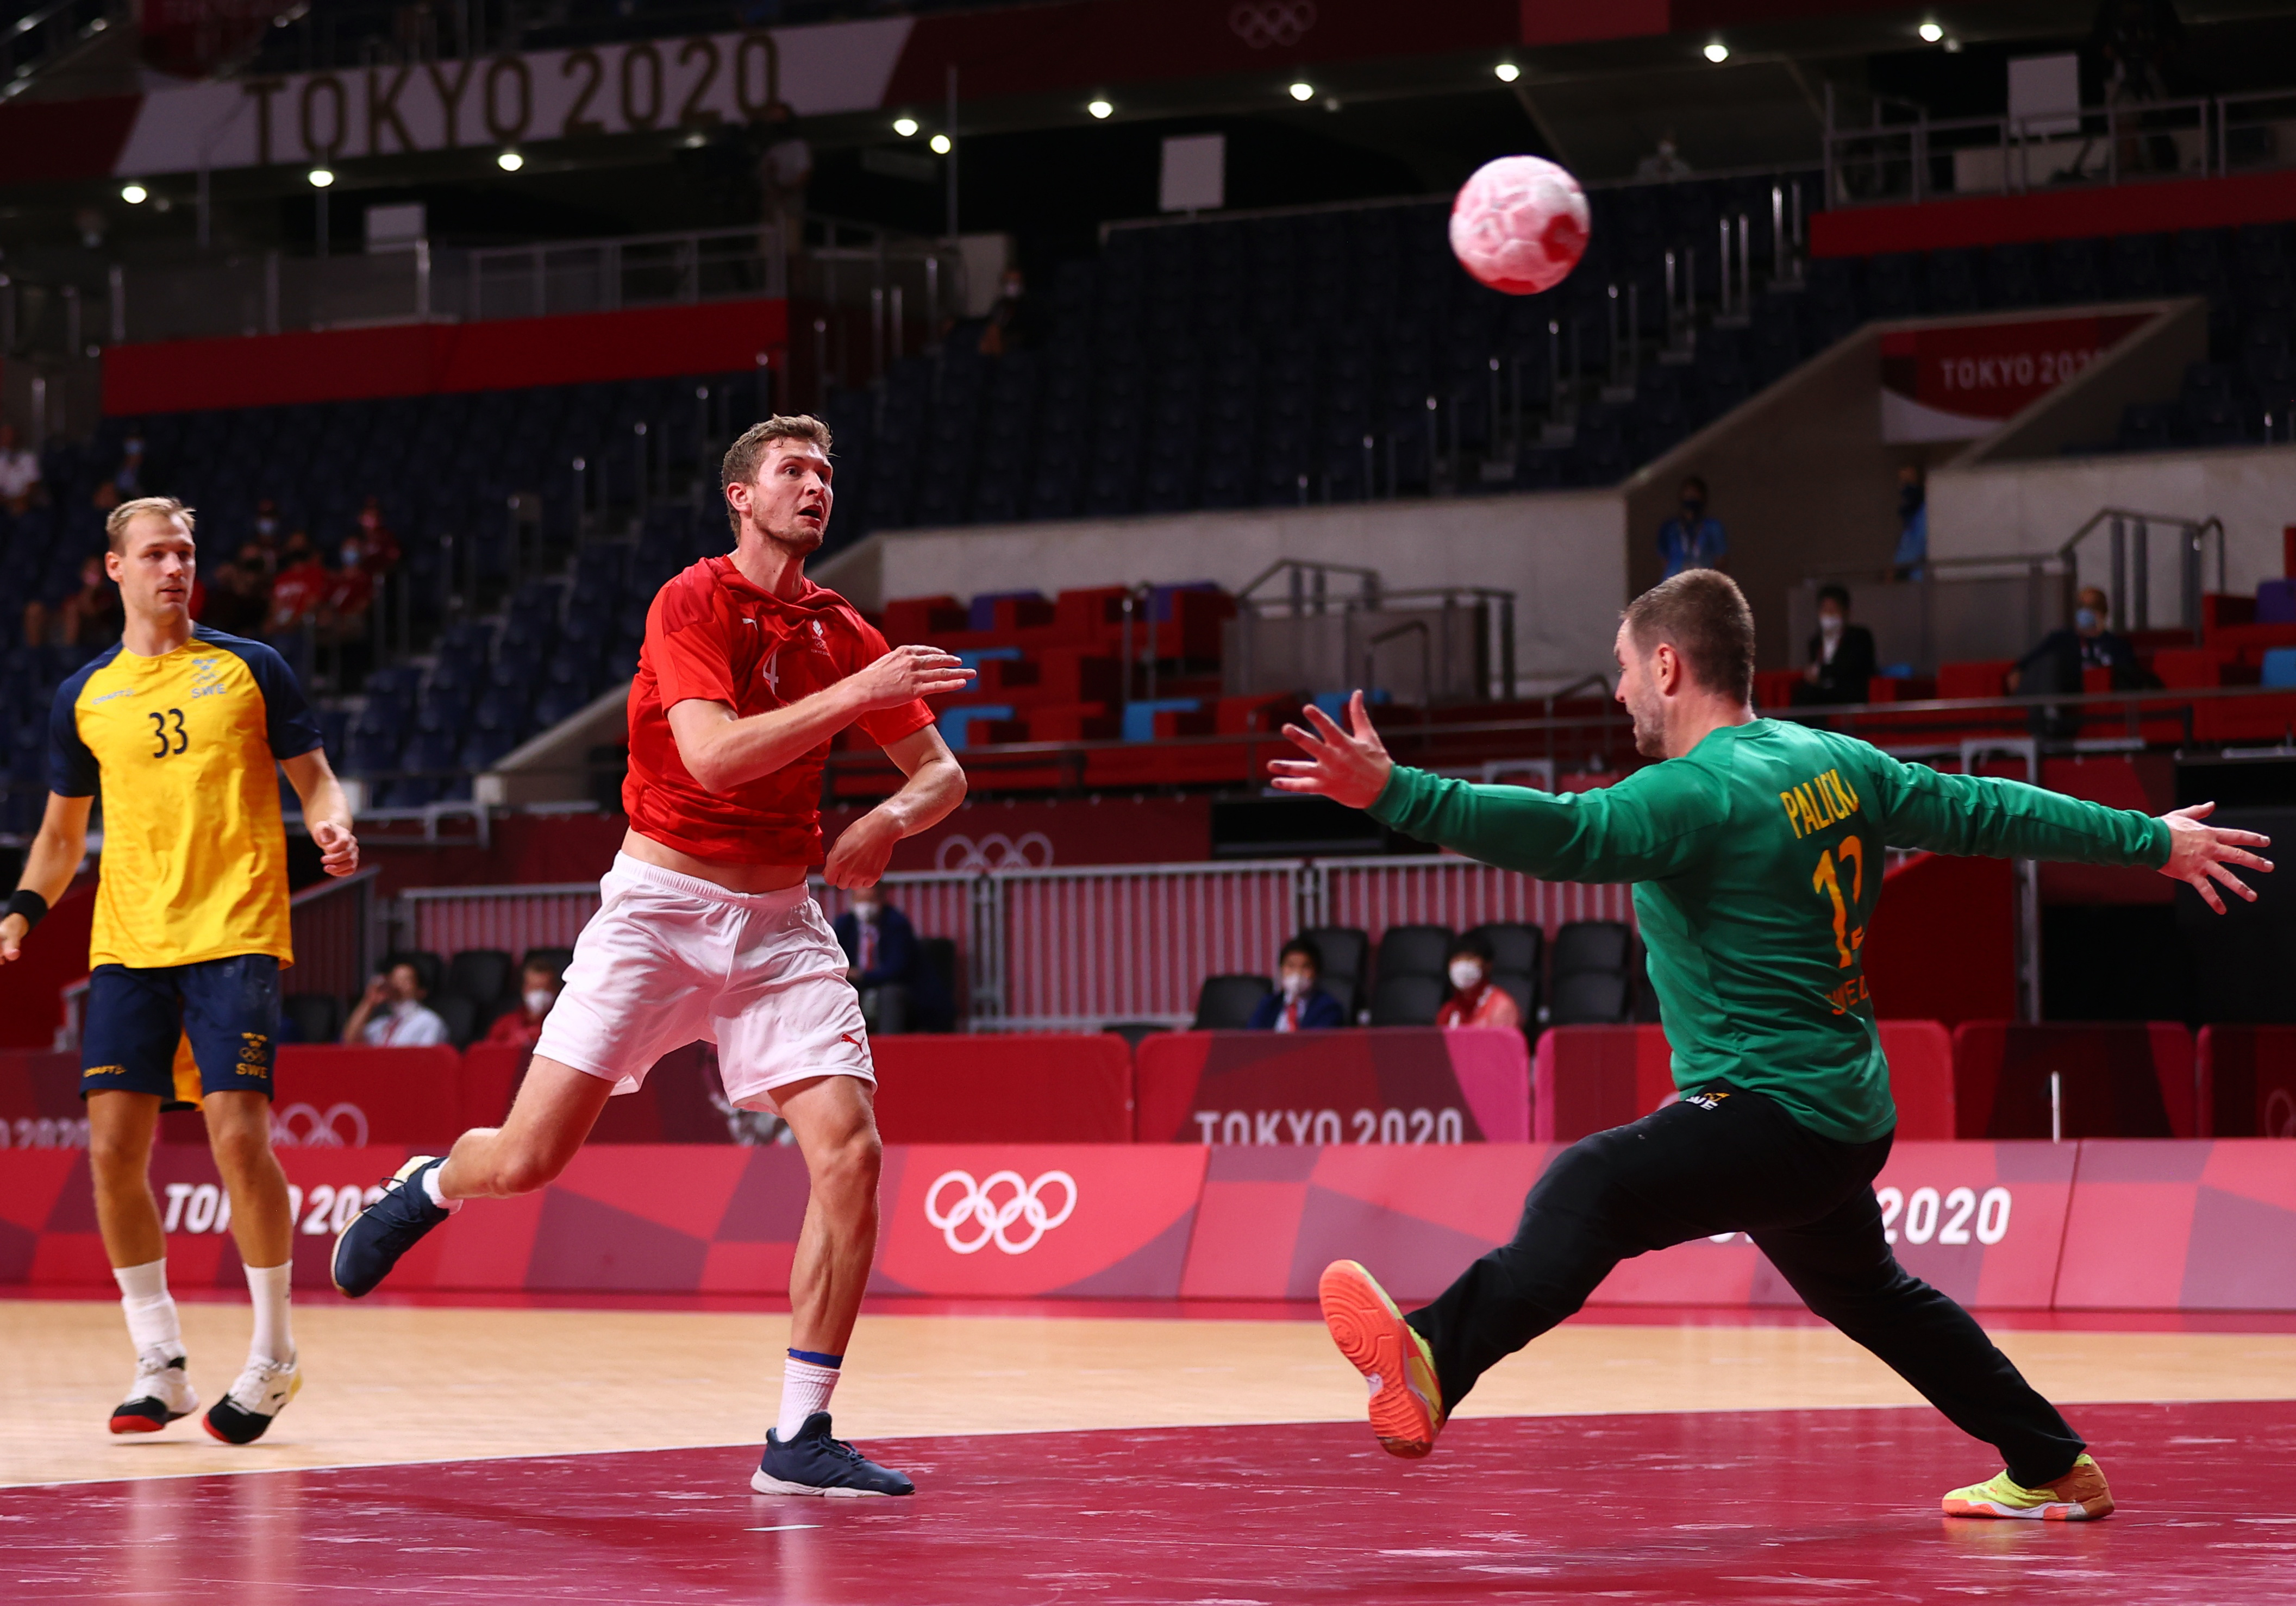 Handball - Men - Group B - Denmark v Sweden